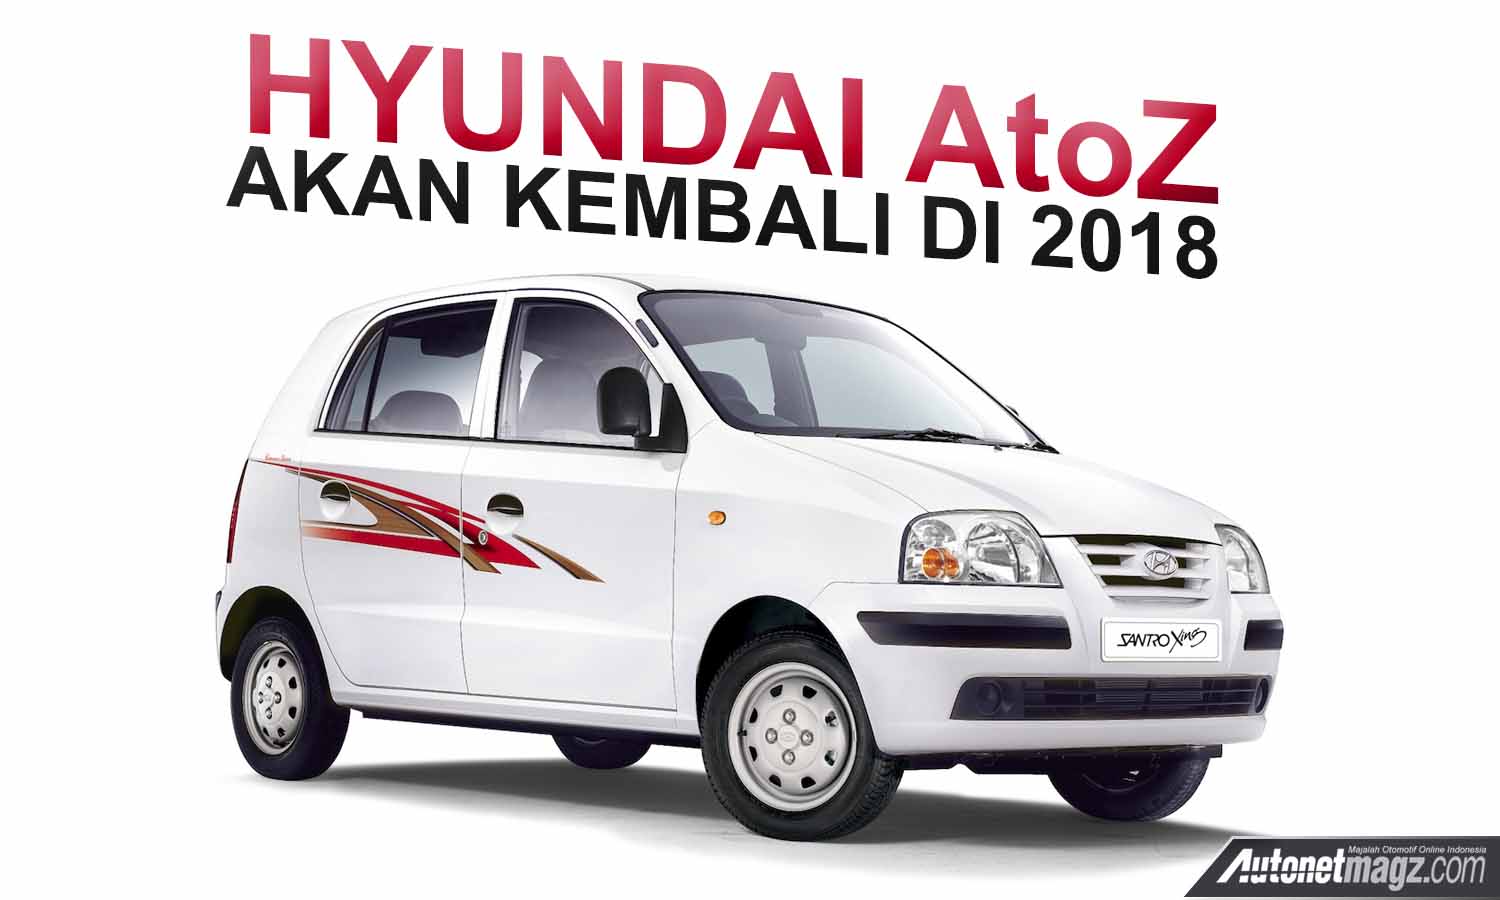 Berita, hyundai atoz kembali di 2018: Hyundai AtoZ Akan Diproduksi Lagi, Debut di 2018